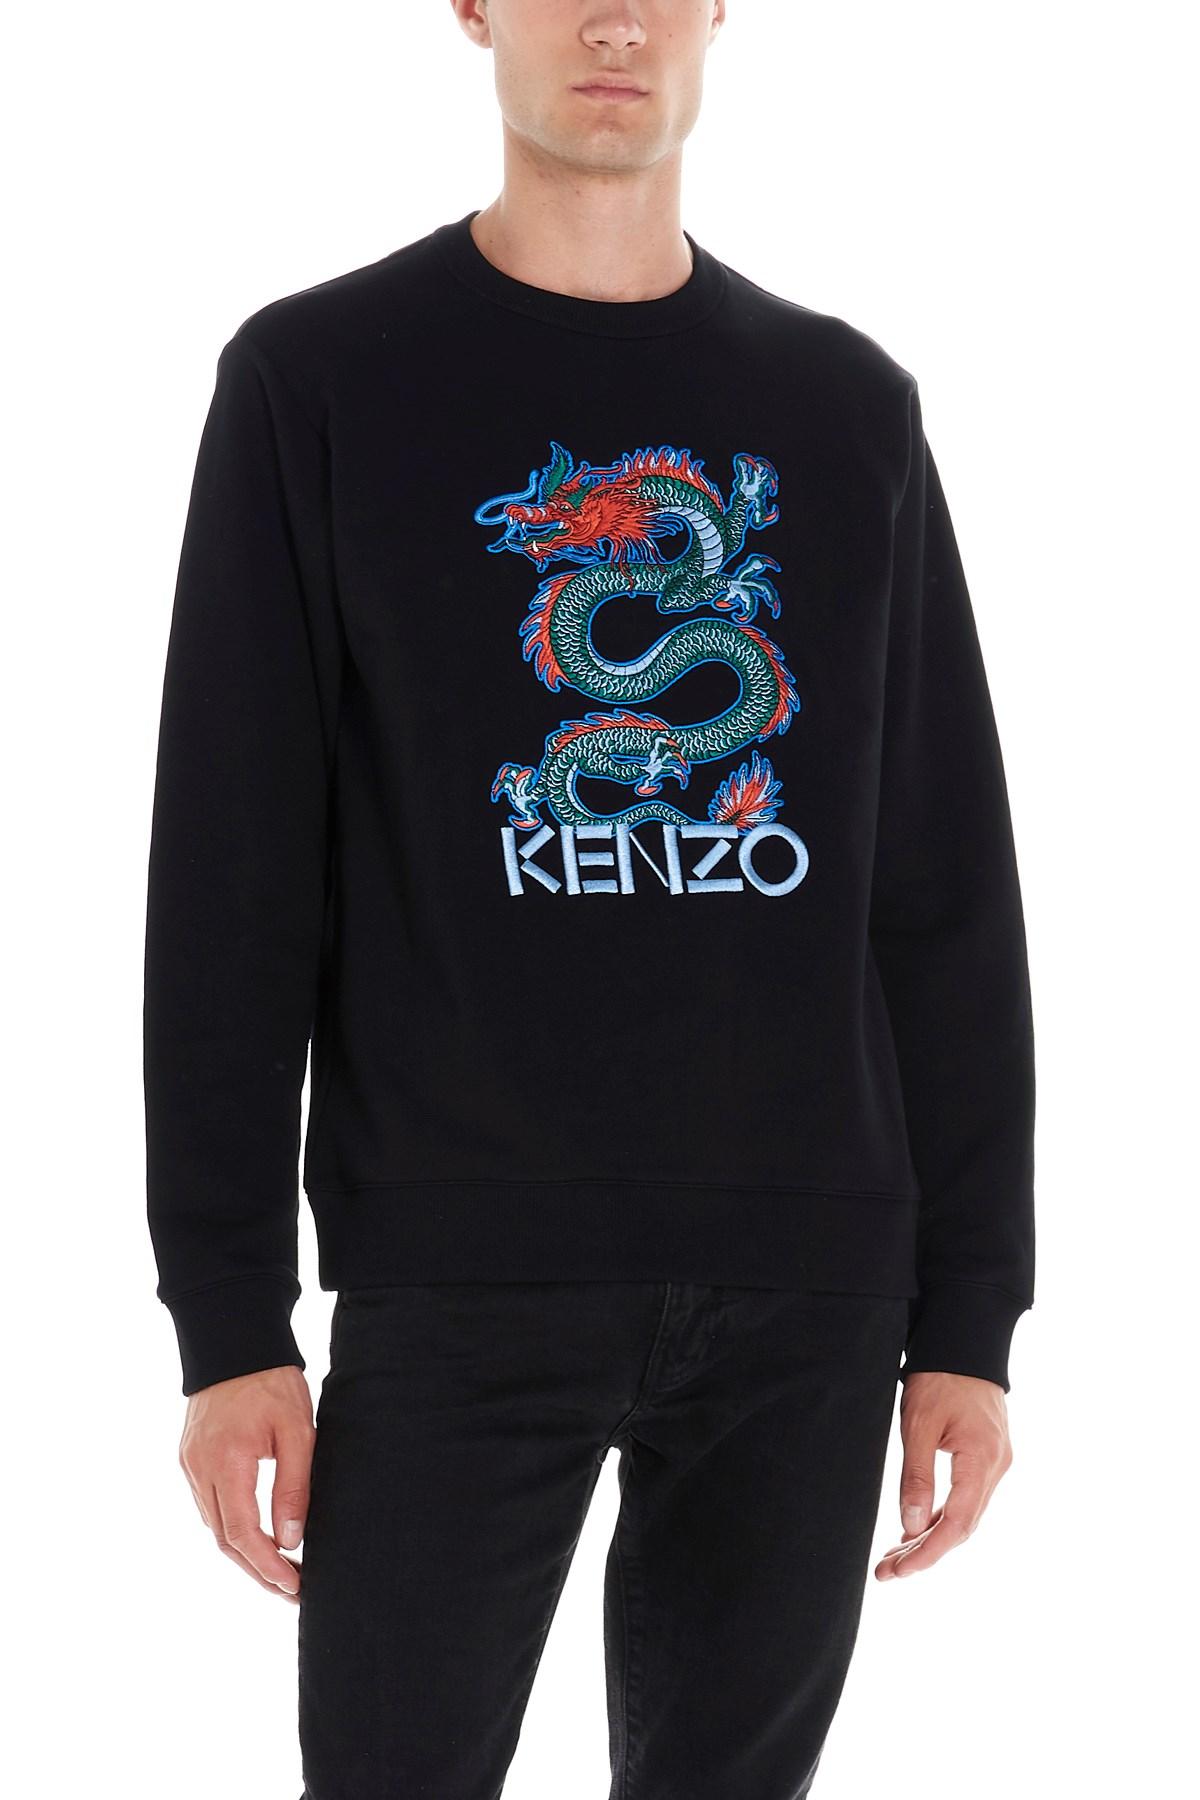 kenzo sweater dragon